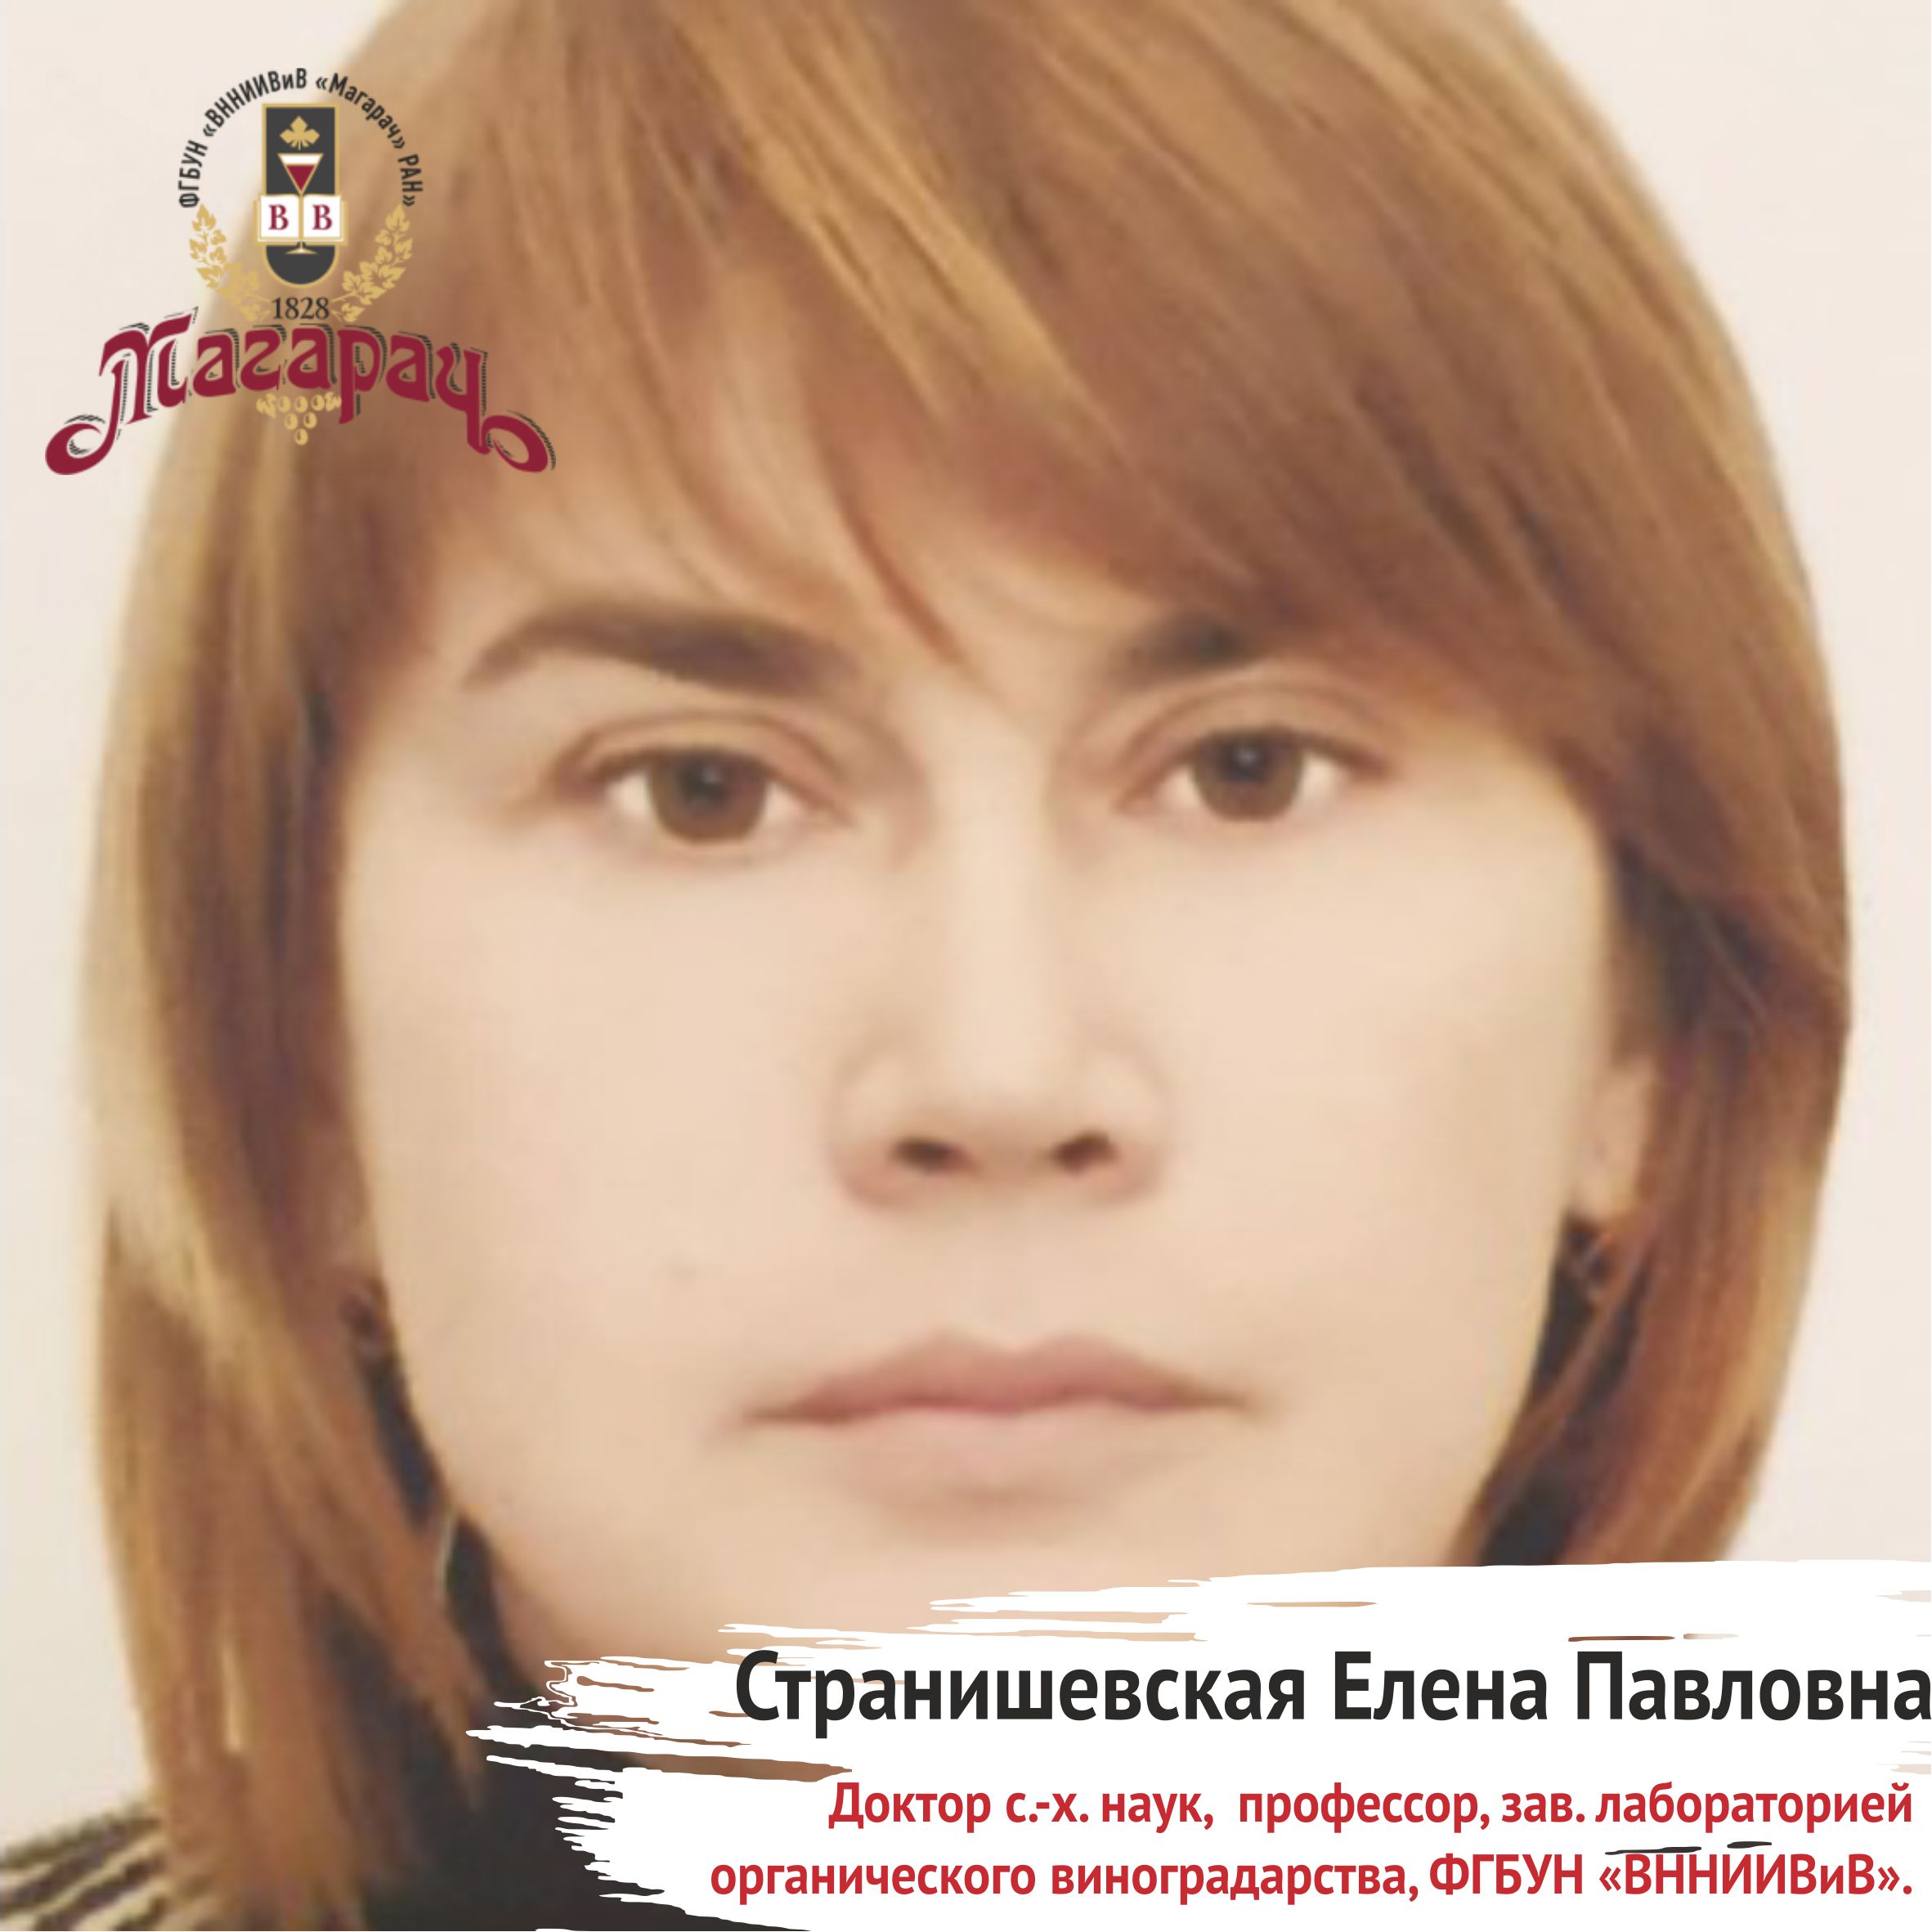 Странишевская Елена Павловна